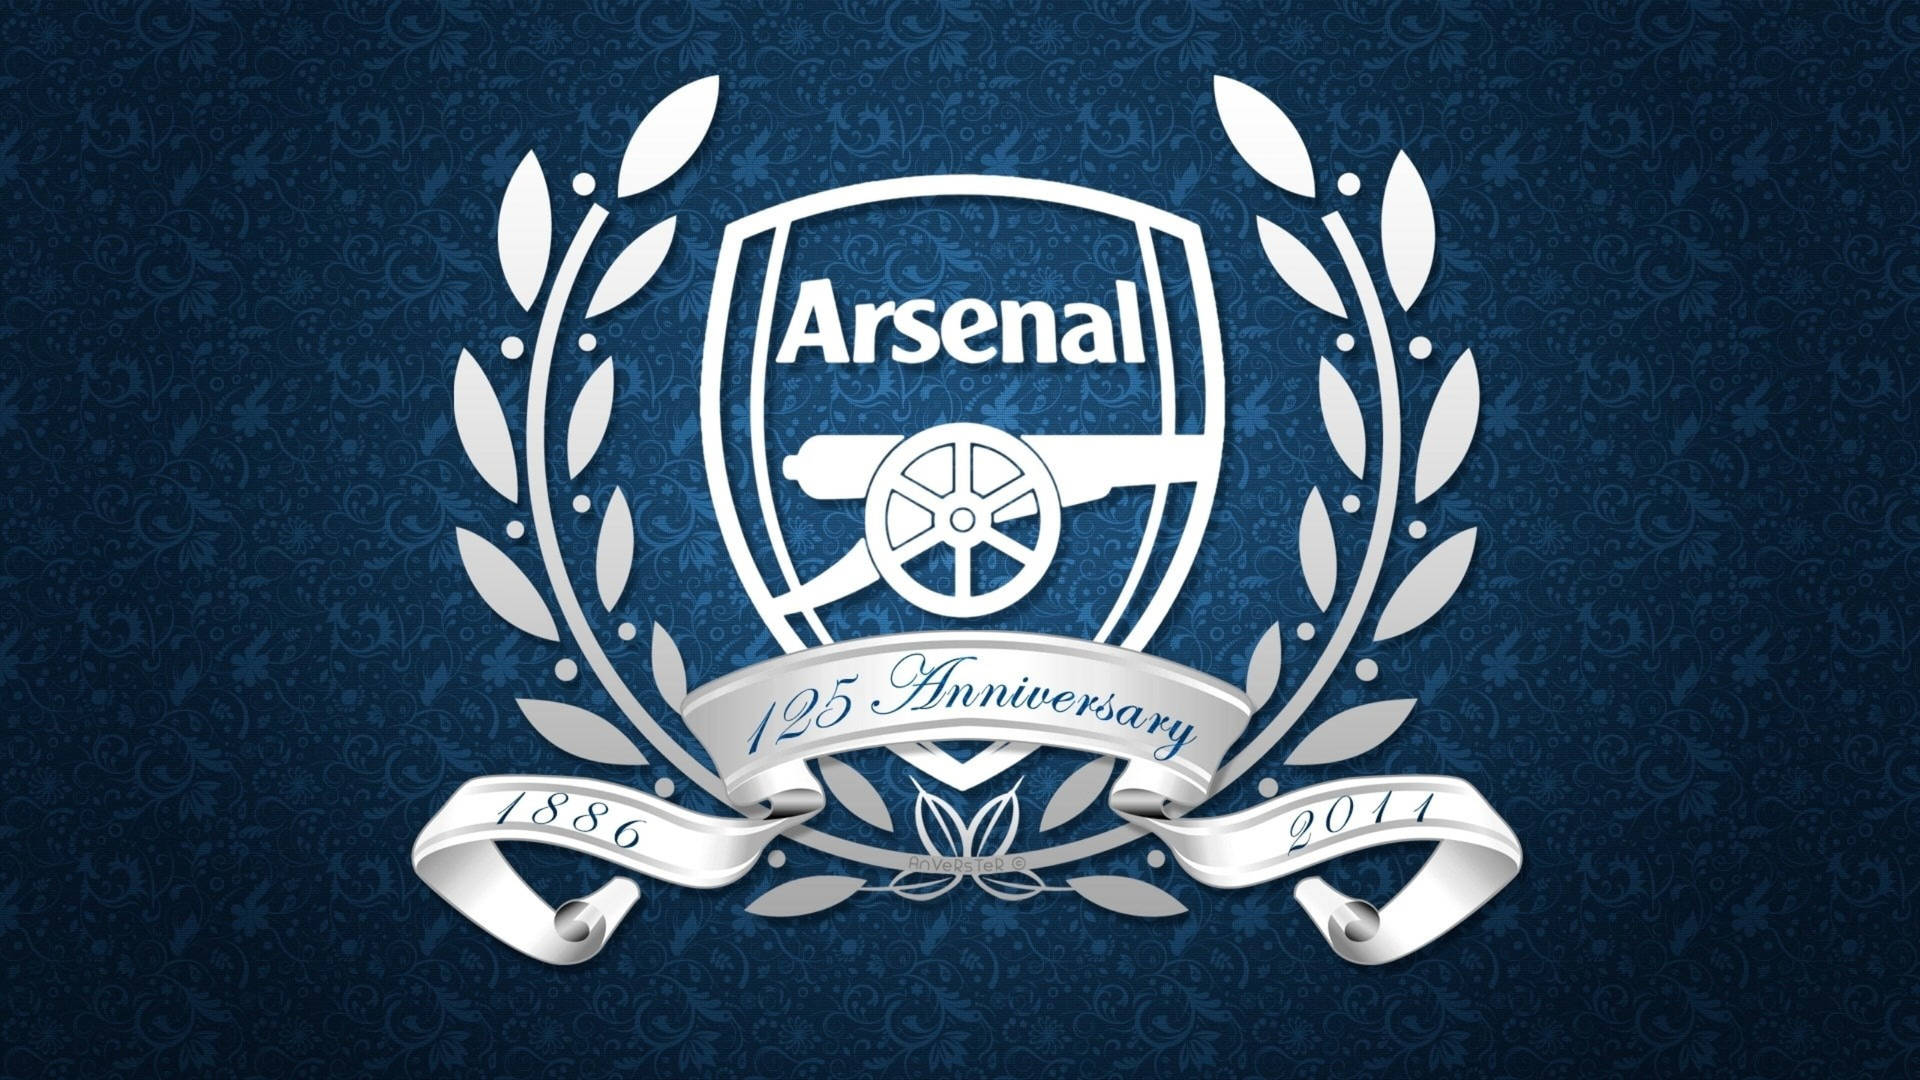 Tapet til Arsenal Anniversar: Fejr Arsenal anniversar med dette flotte logo-tapet! Wallpaper